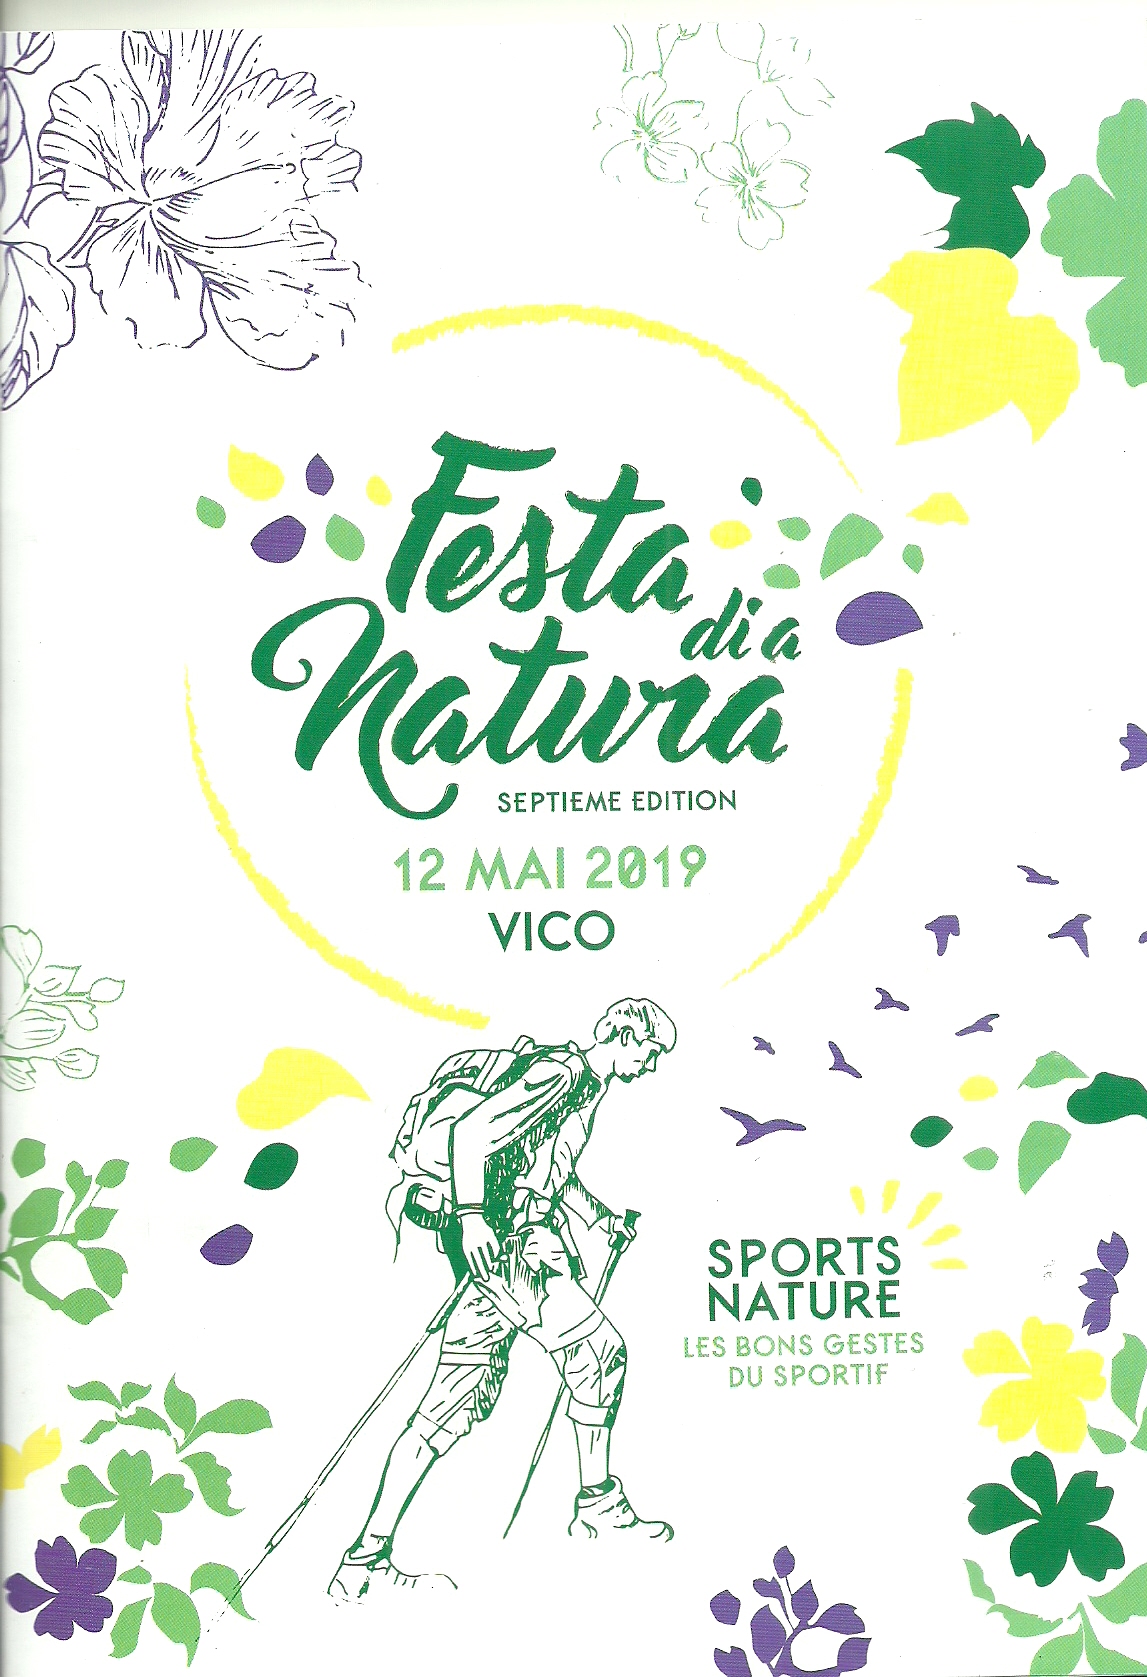 Festa di a Natura 2019